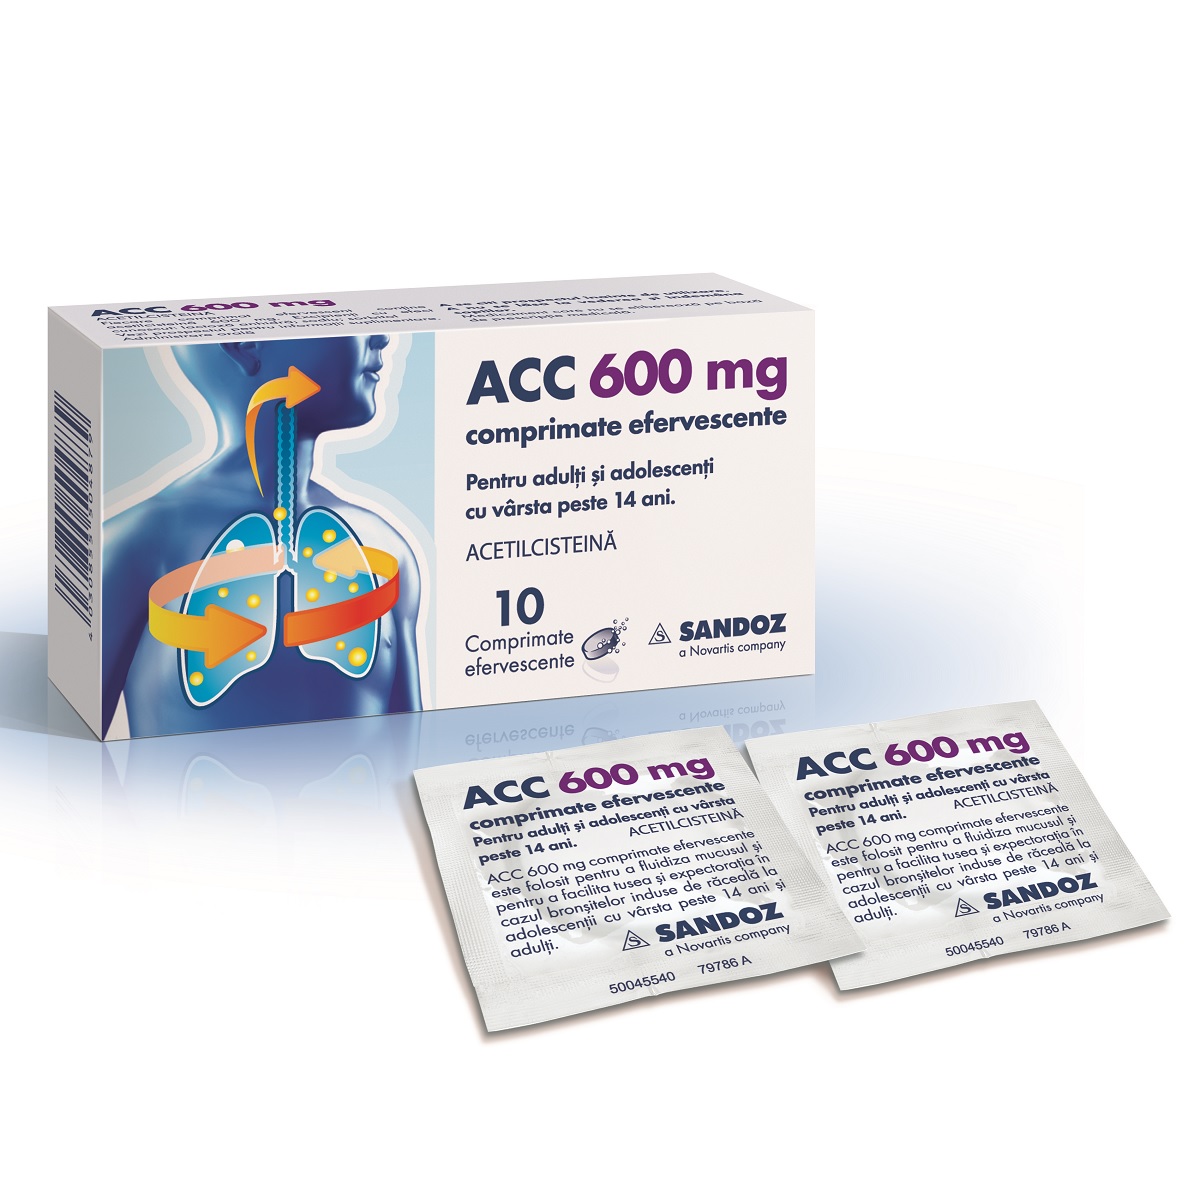 ACC 600 mg, 10 comprimate efervescente, Sandoz